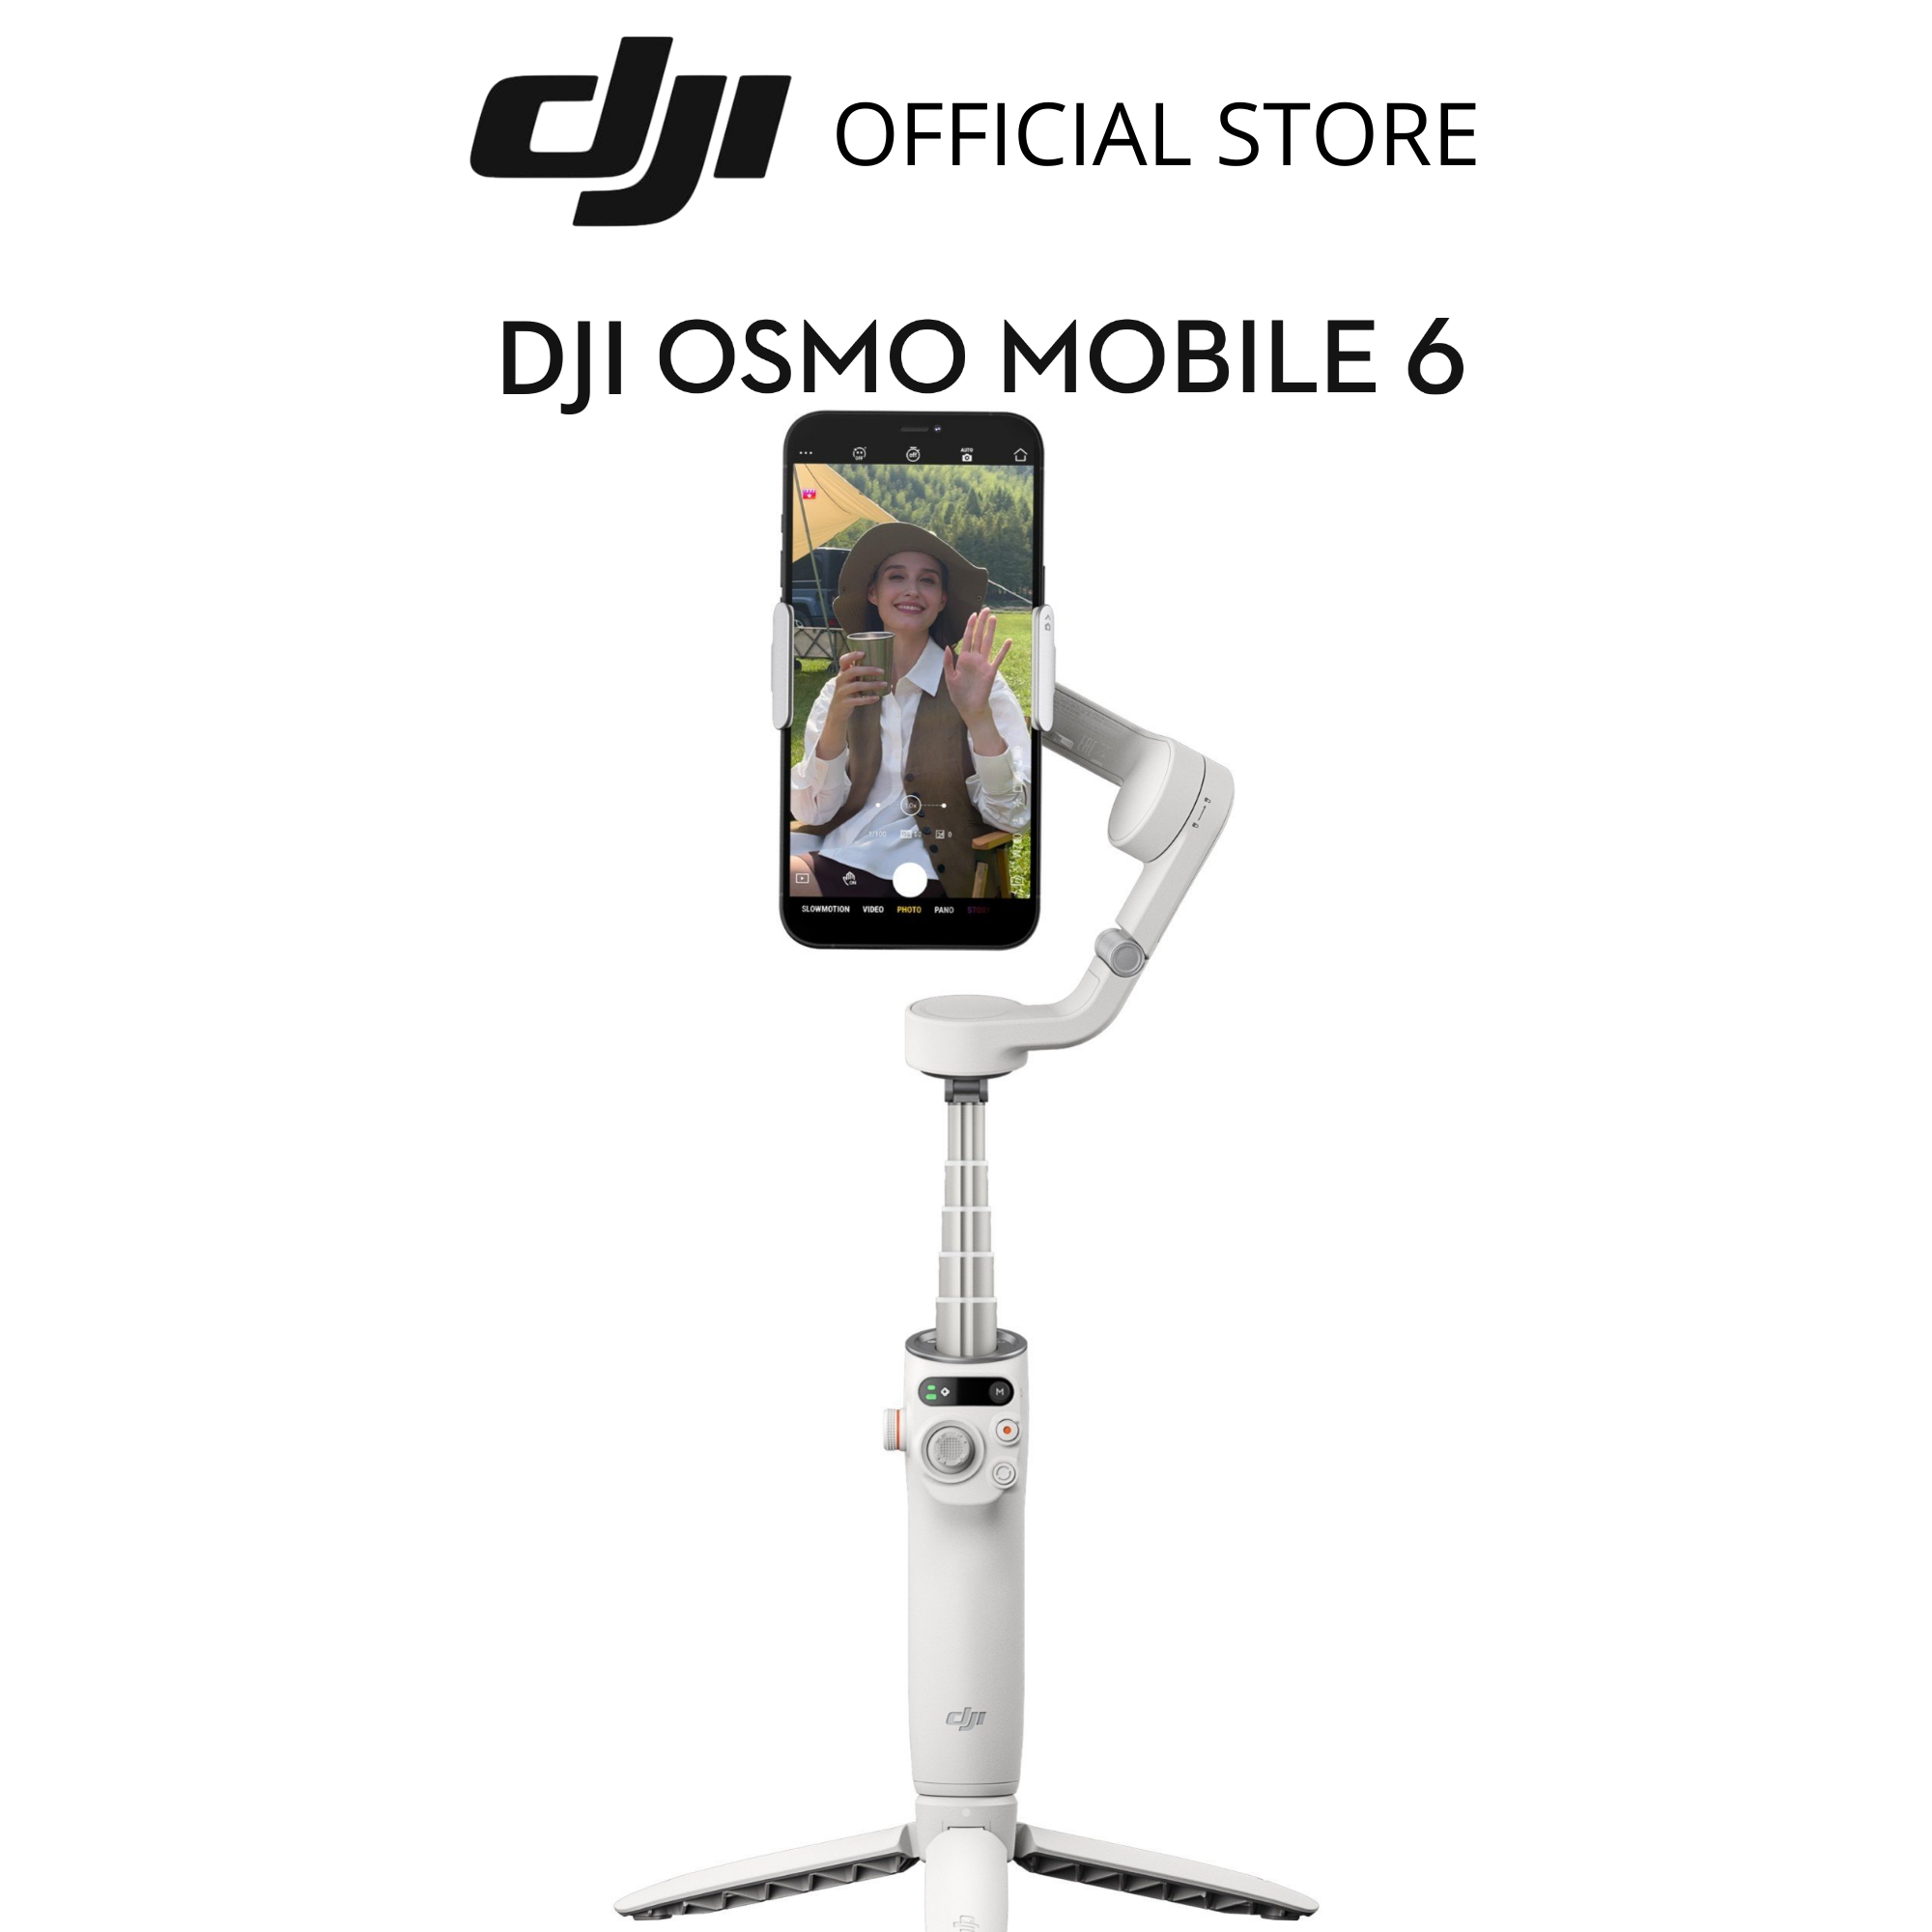 Gimbal chống rung điện thoại DJI Osmo Mobile 6 có thể kéo dài (DJI OM 6) - Hàng chính hãng